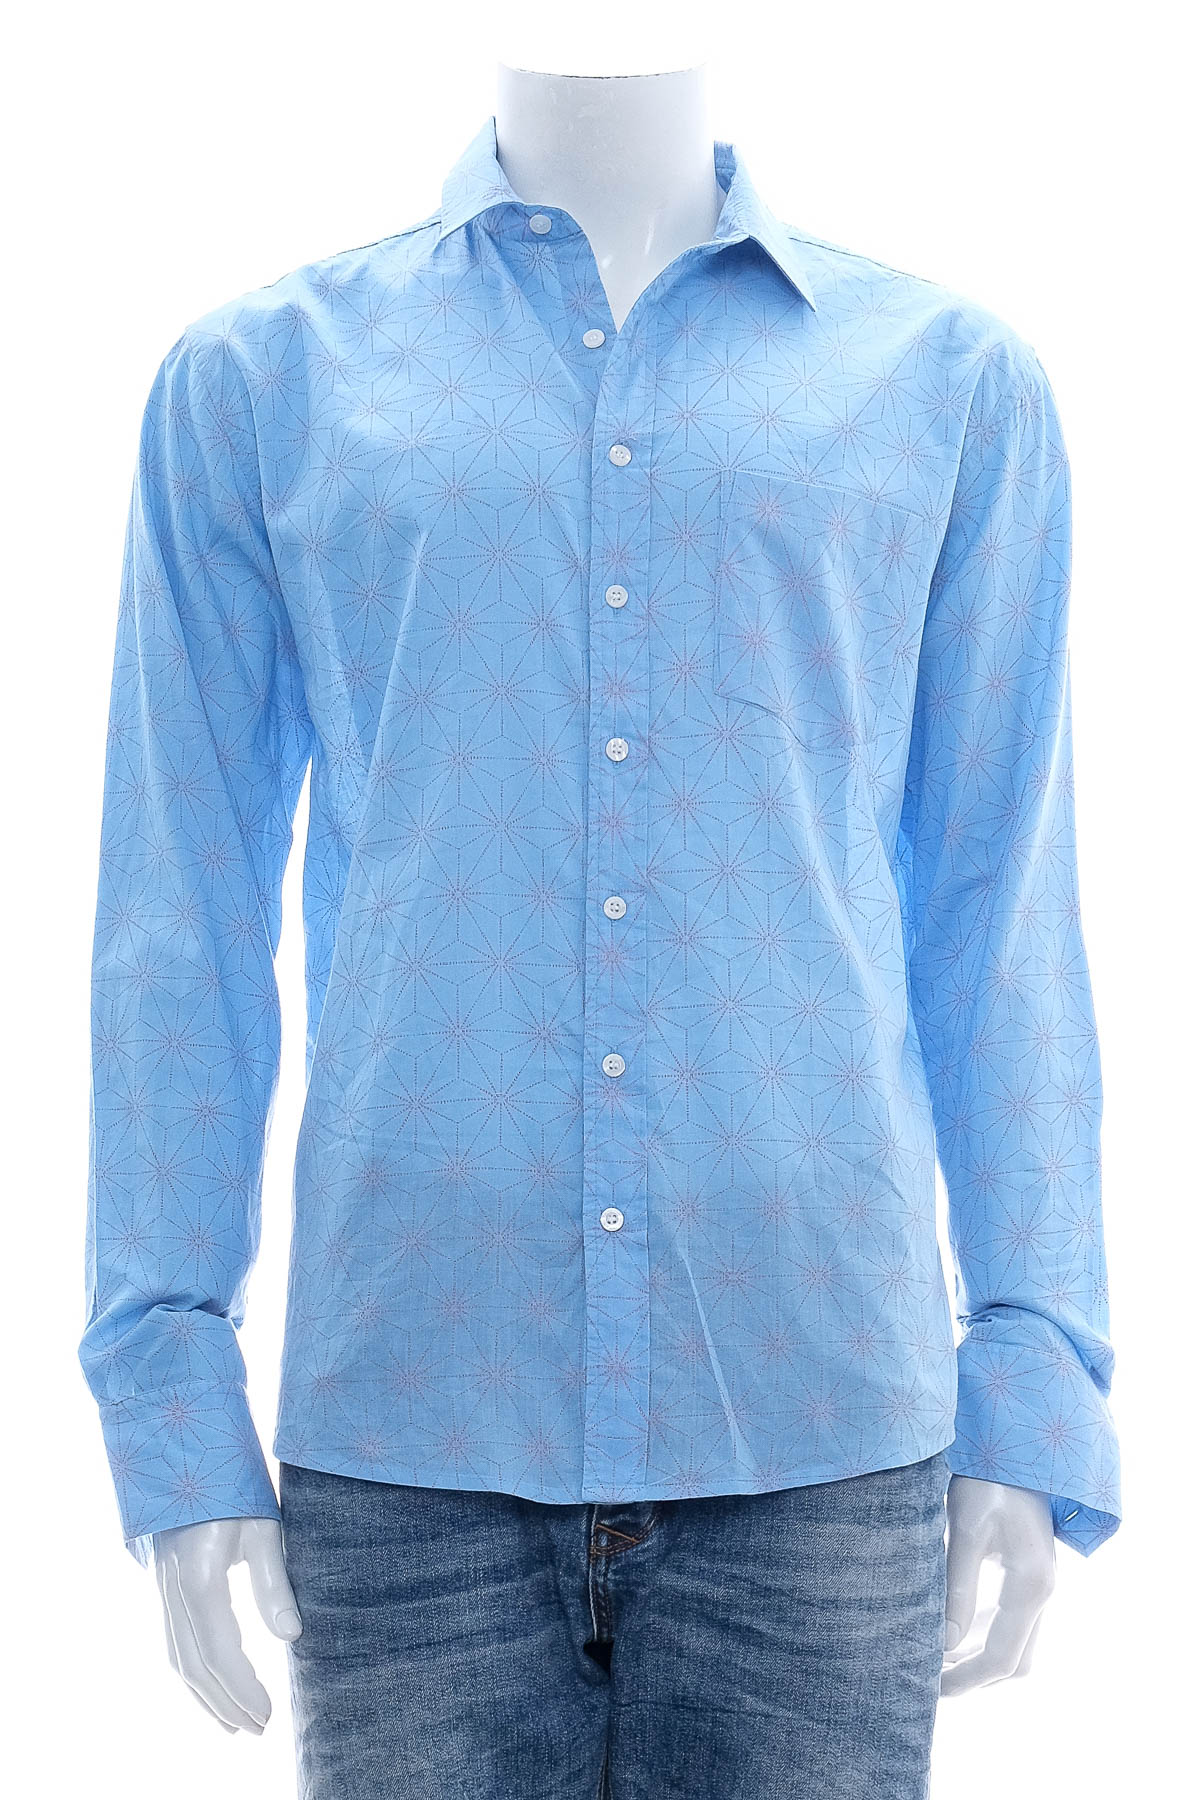 Ανδρικό πουκάμισο - Frangipani - 0